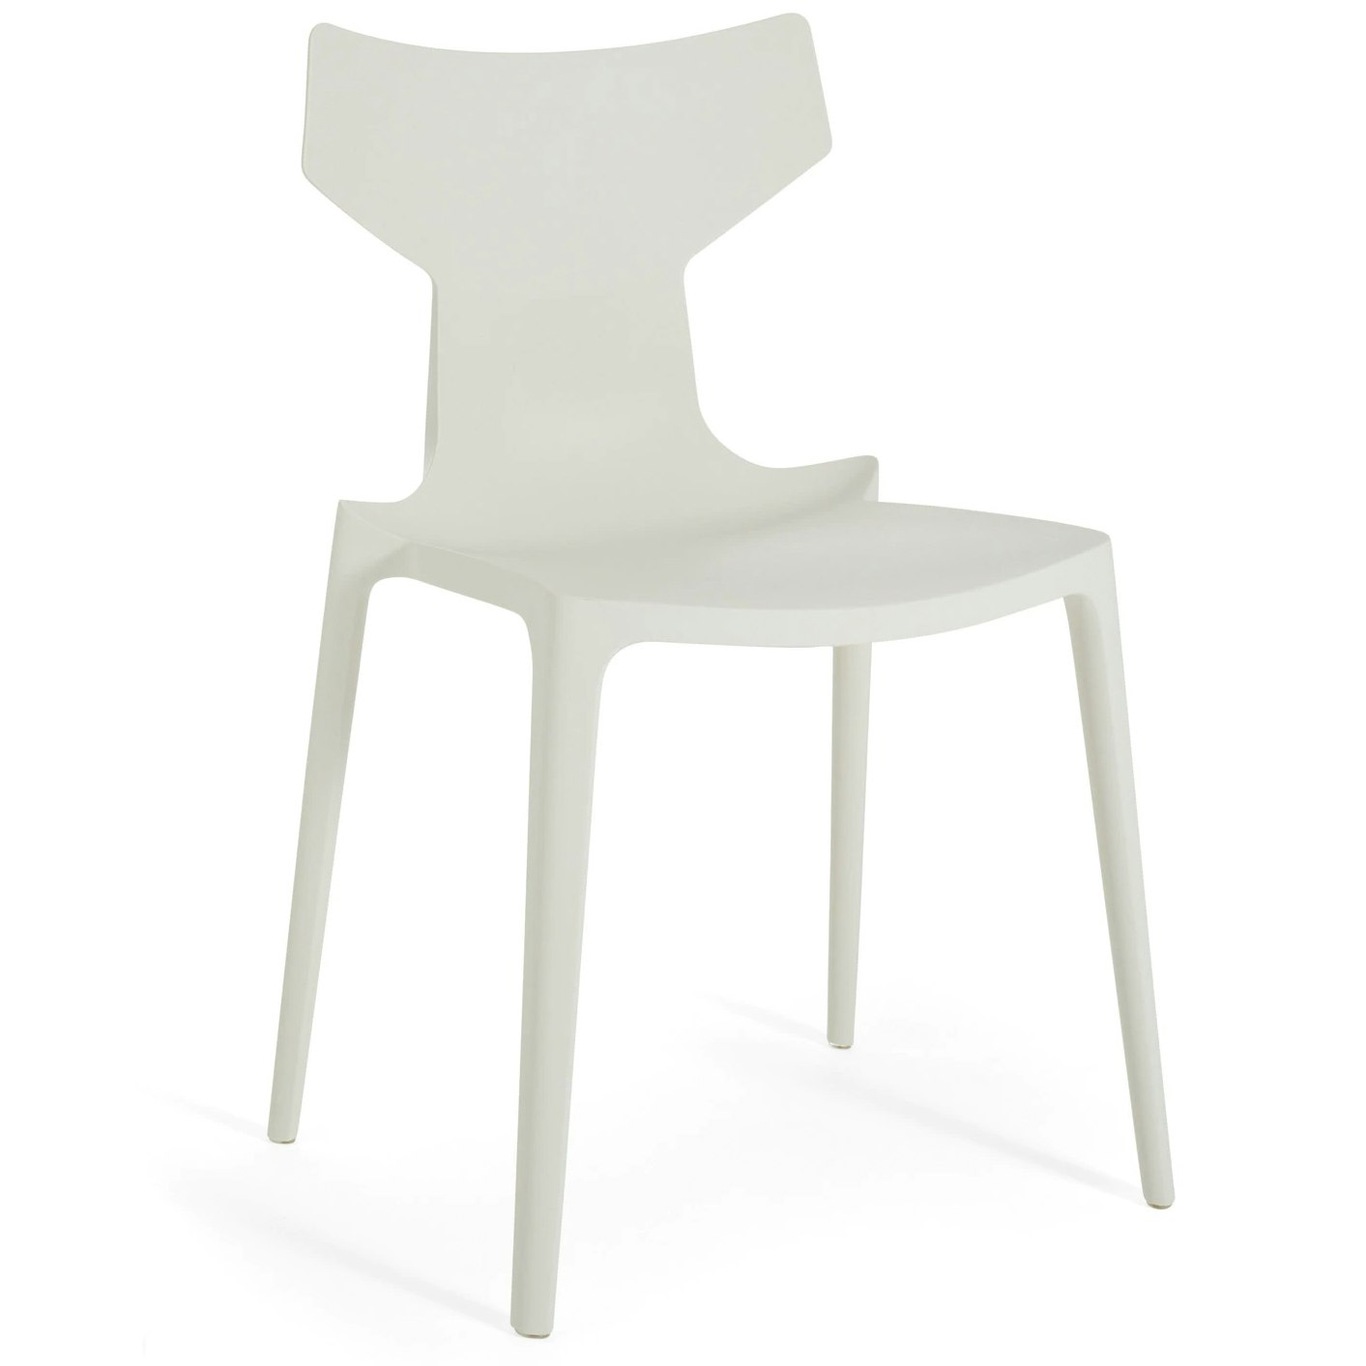 Re-Chair Chair, White